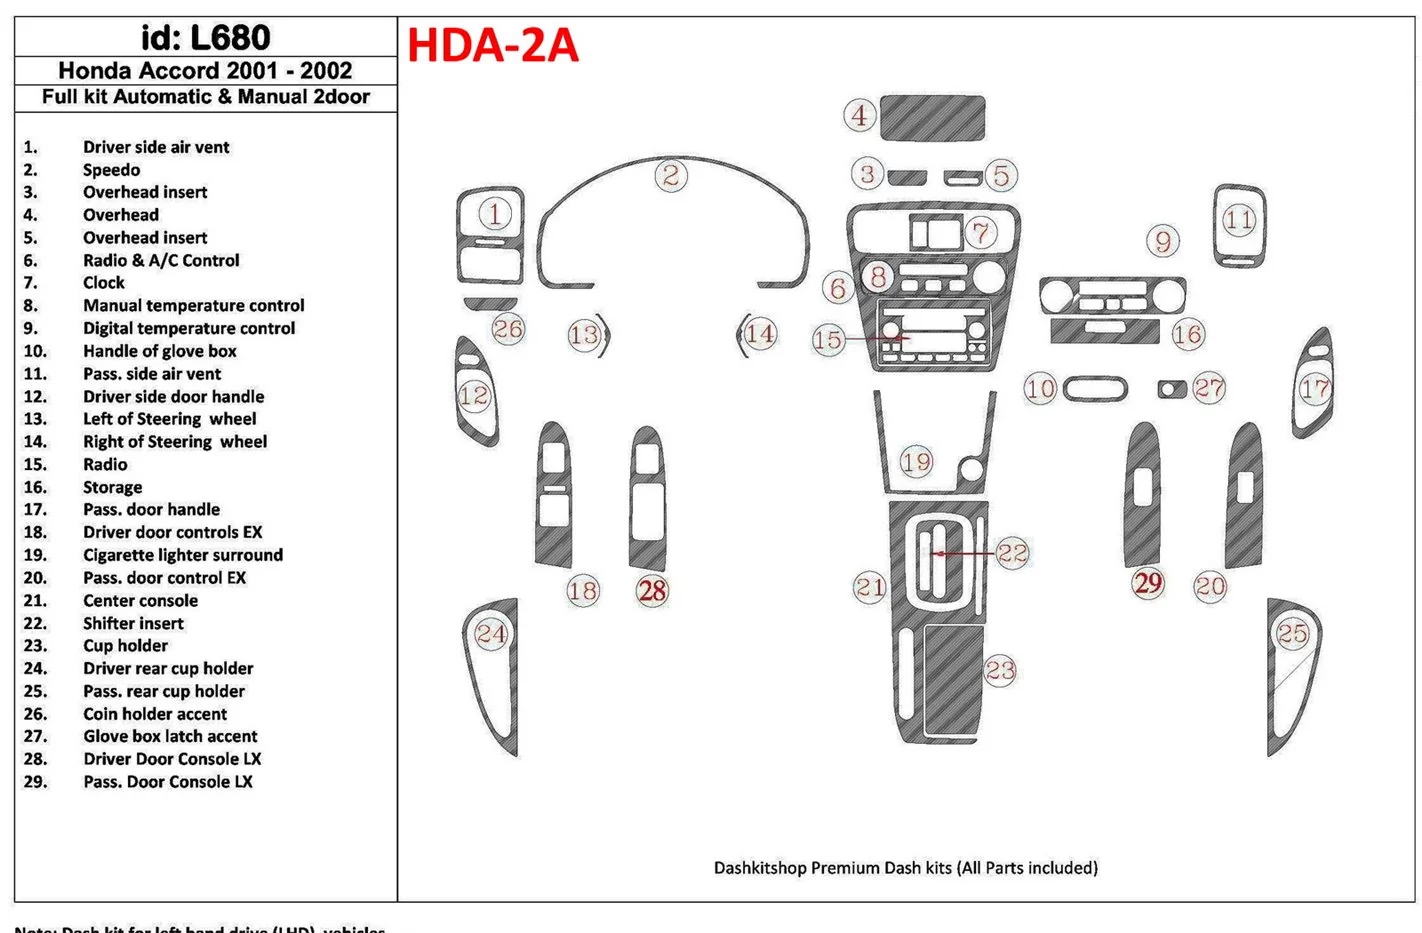 Honda Accord 2001-2002 2 Des portes, Ensemble Complet, 27 Parts set BD Kit la décoration du tableau de bord - 1 - habillage deco